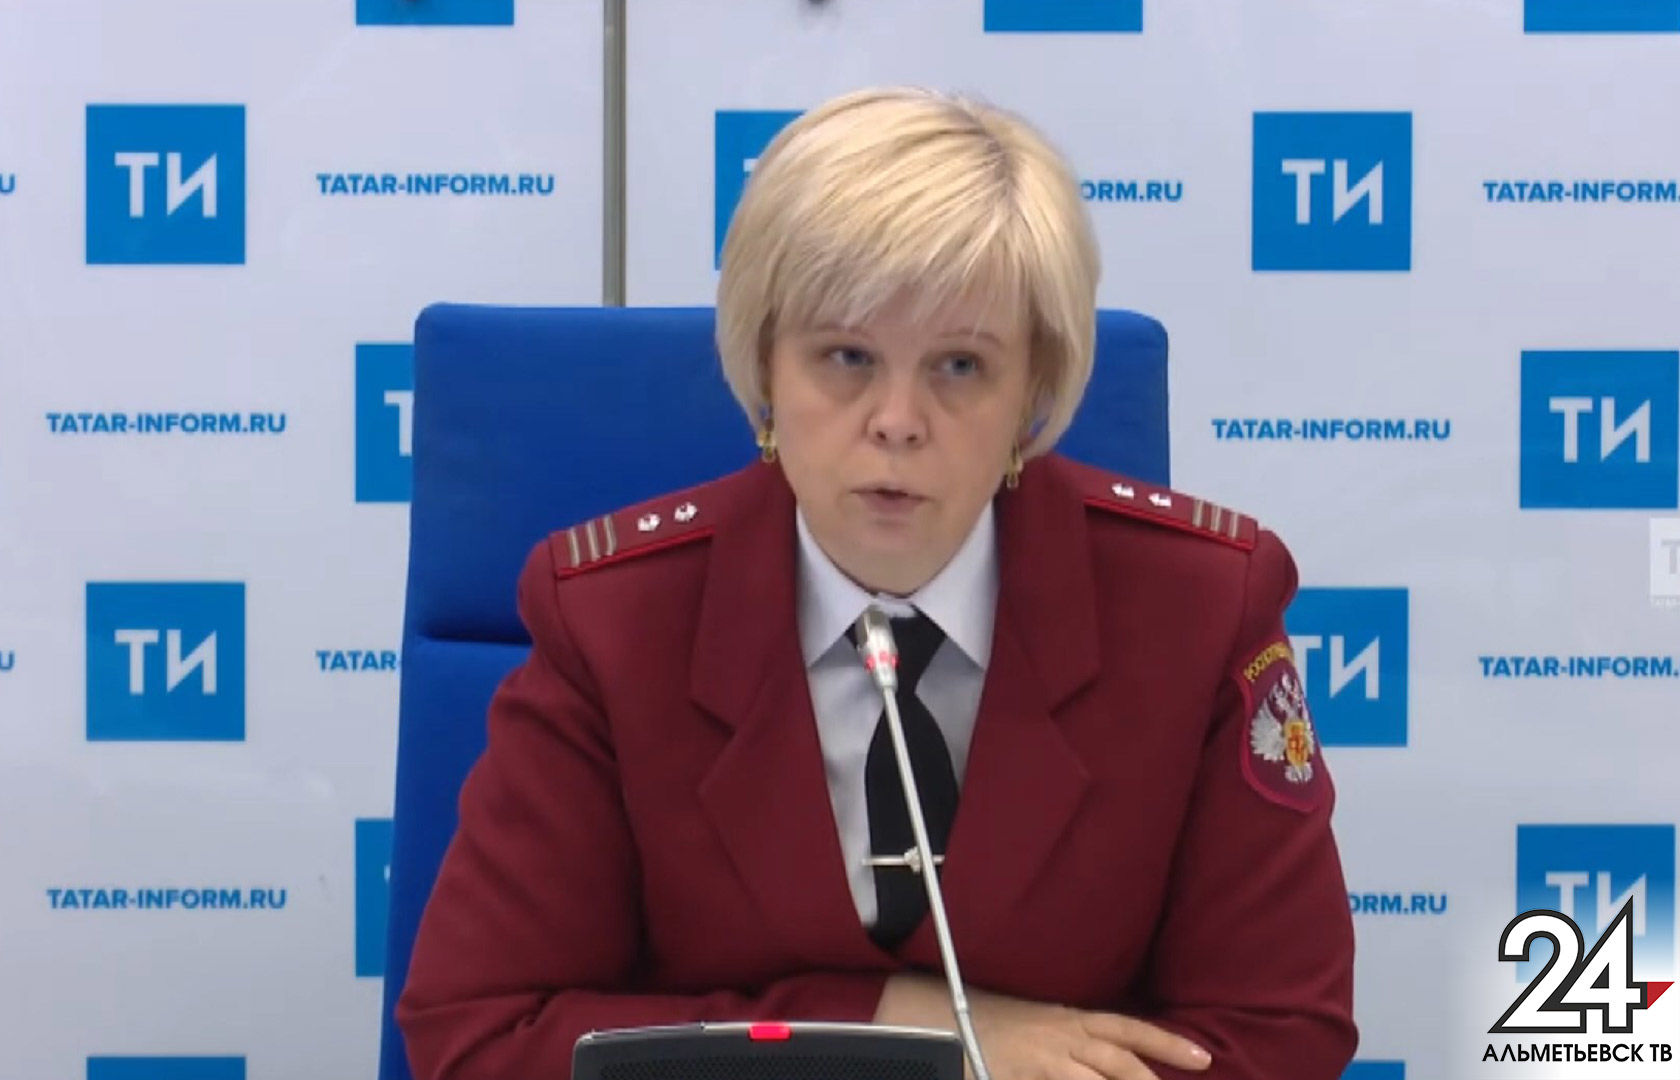 Роспотребнадзор РТ проверил 15 вузов Татарстана, в пяти из них выявили нарушения